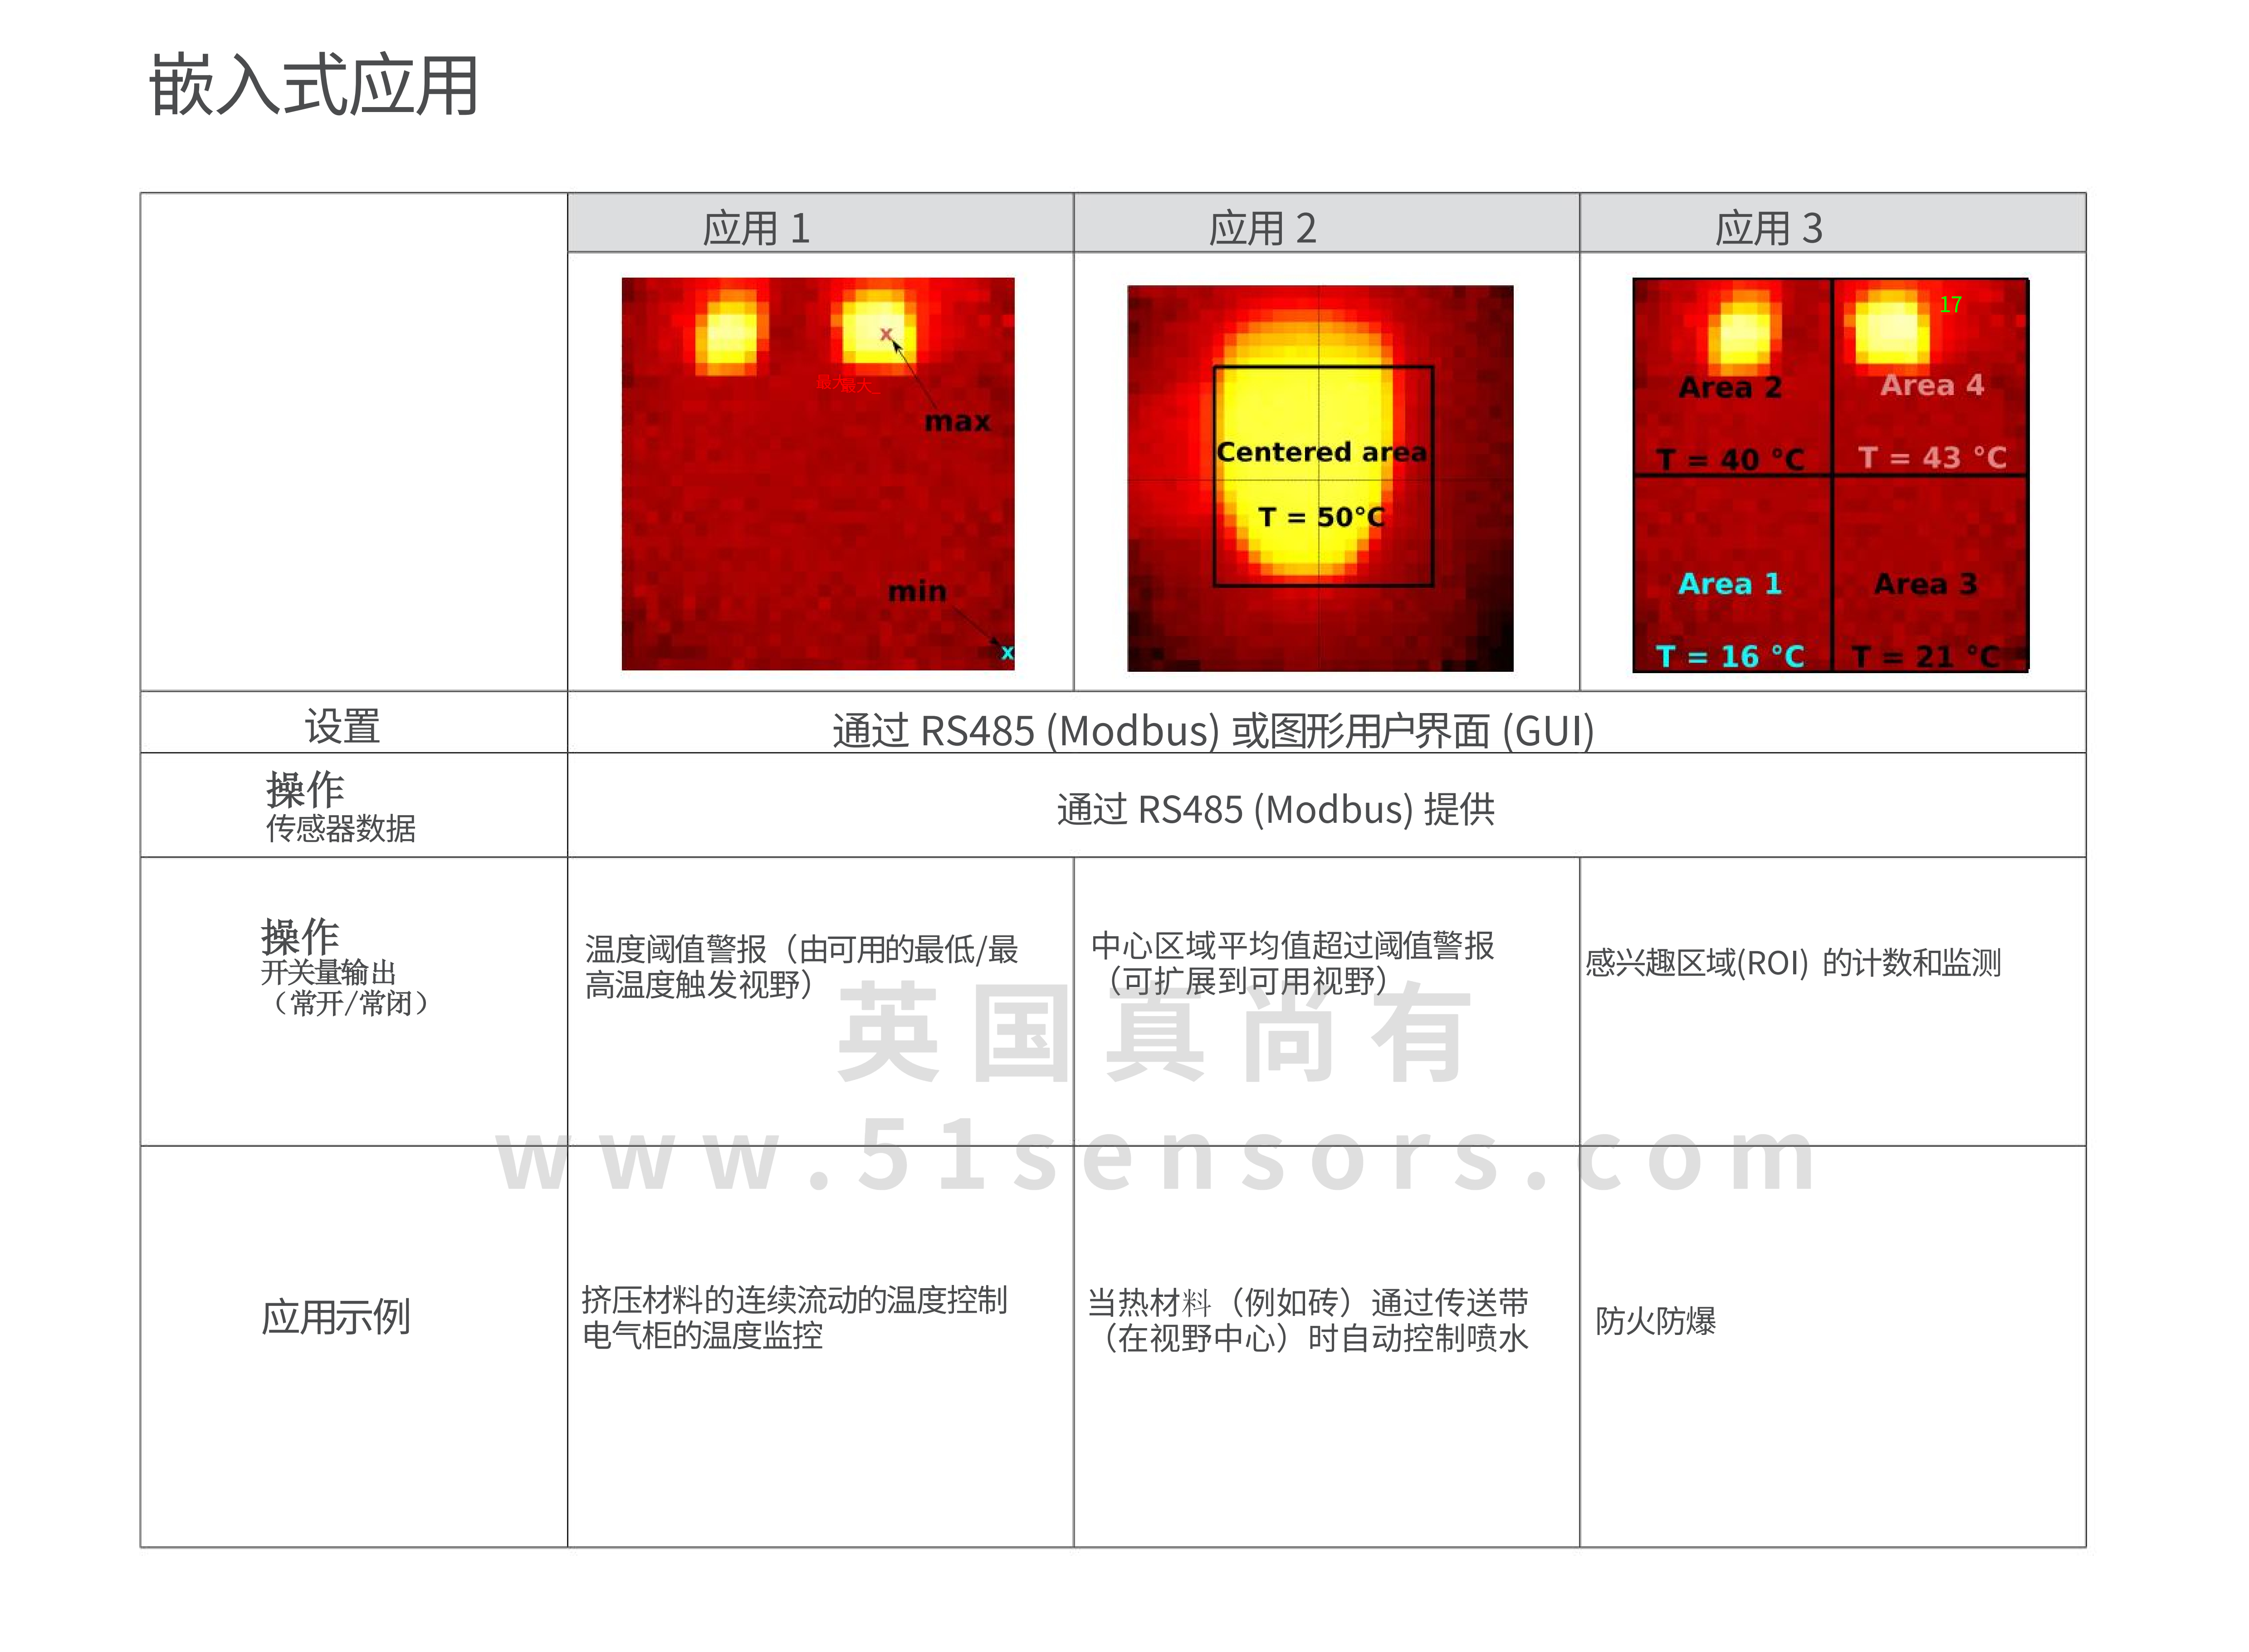 多像素热像仪TC-F101应用